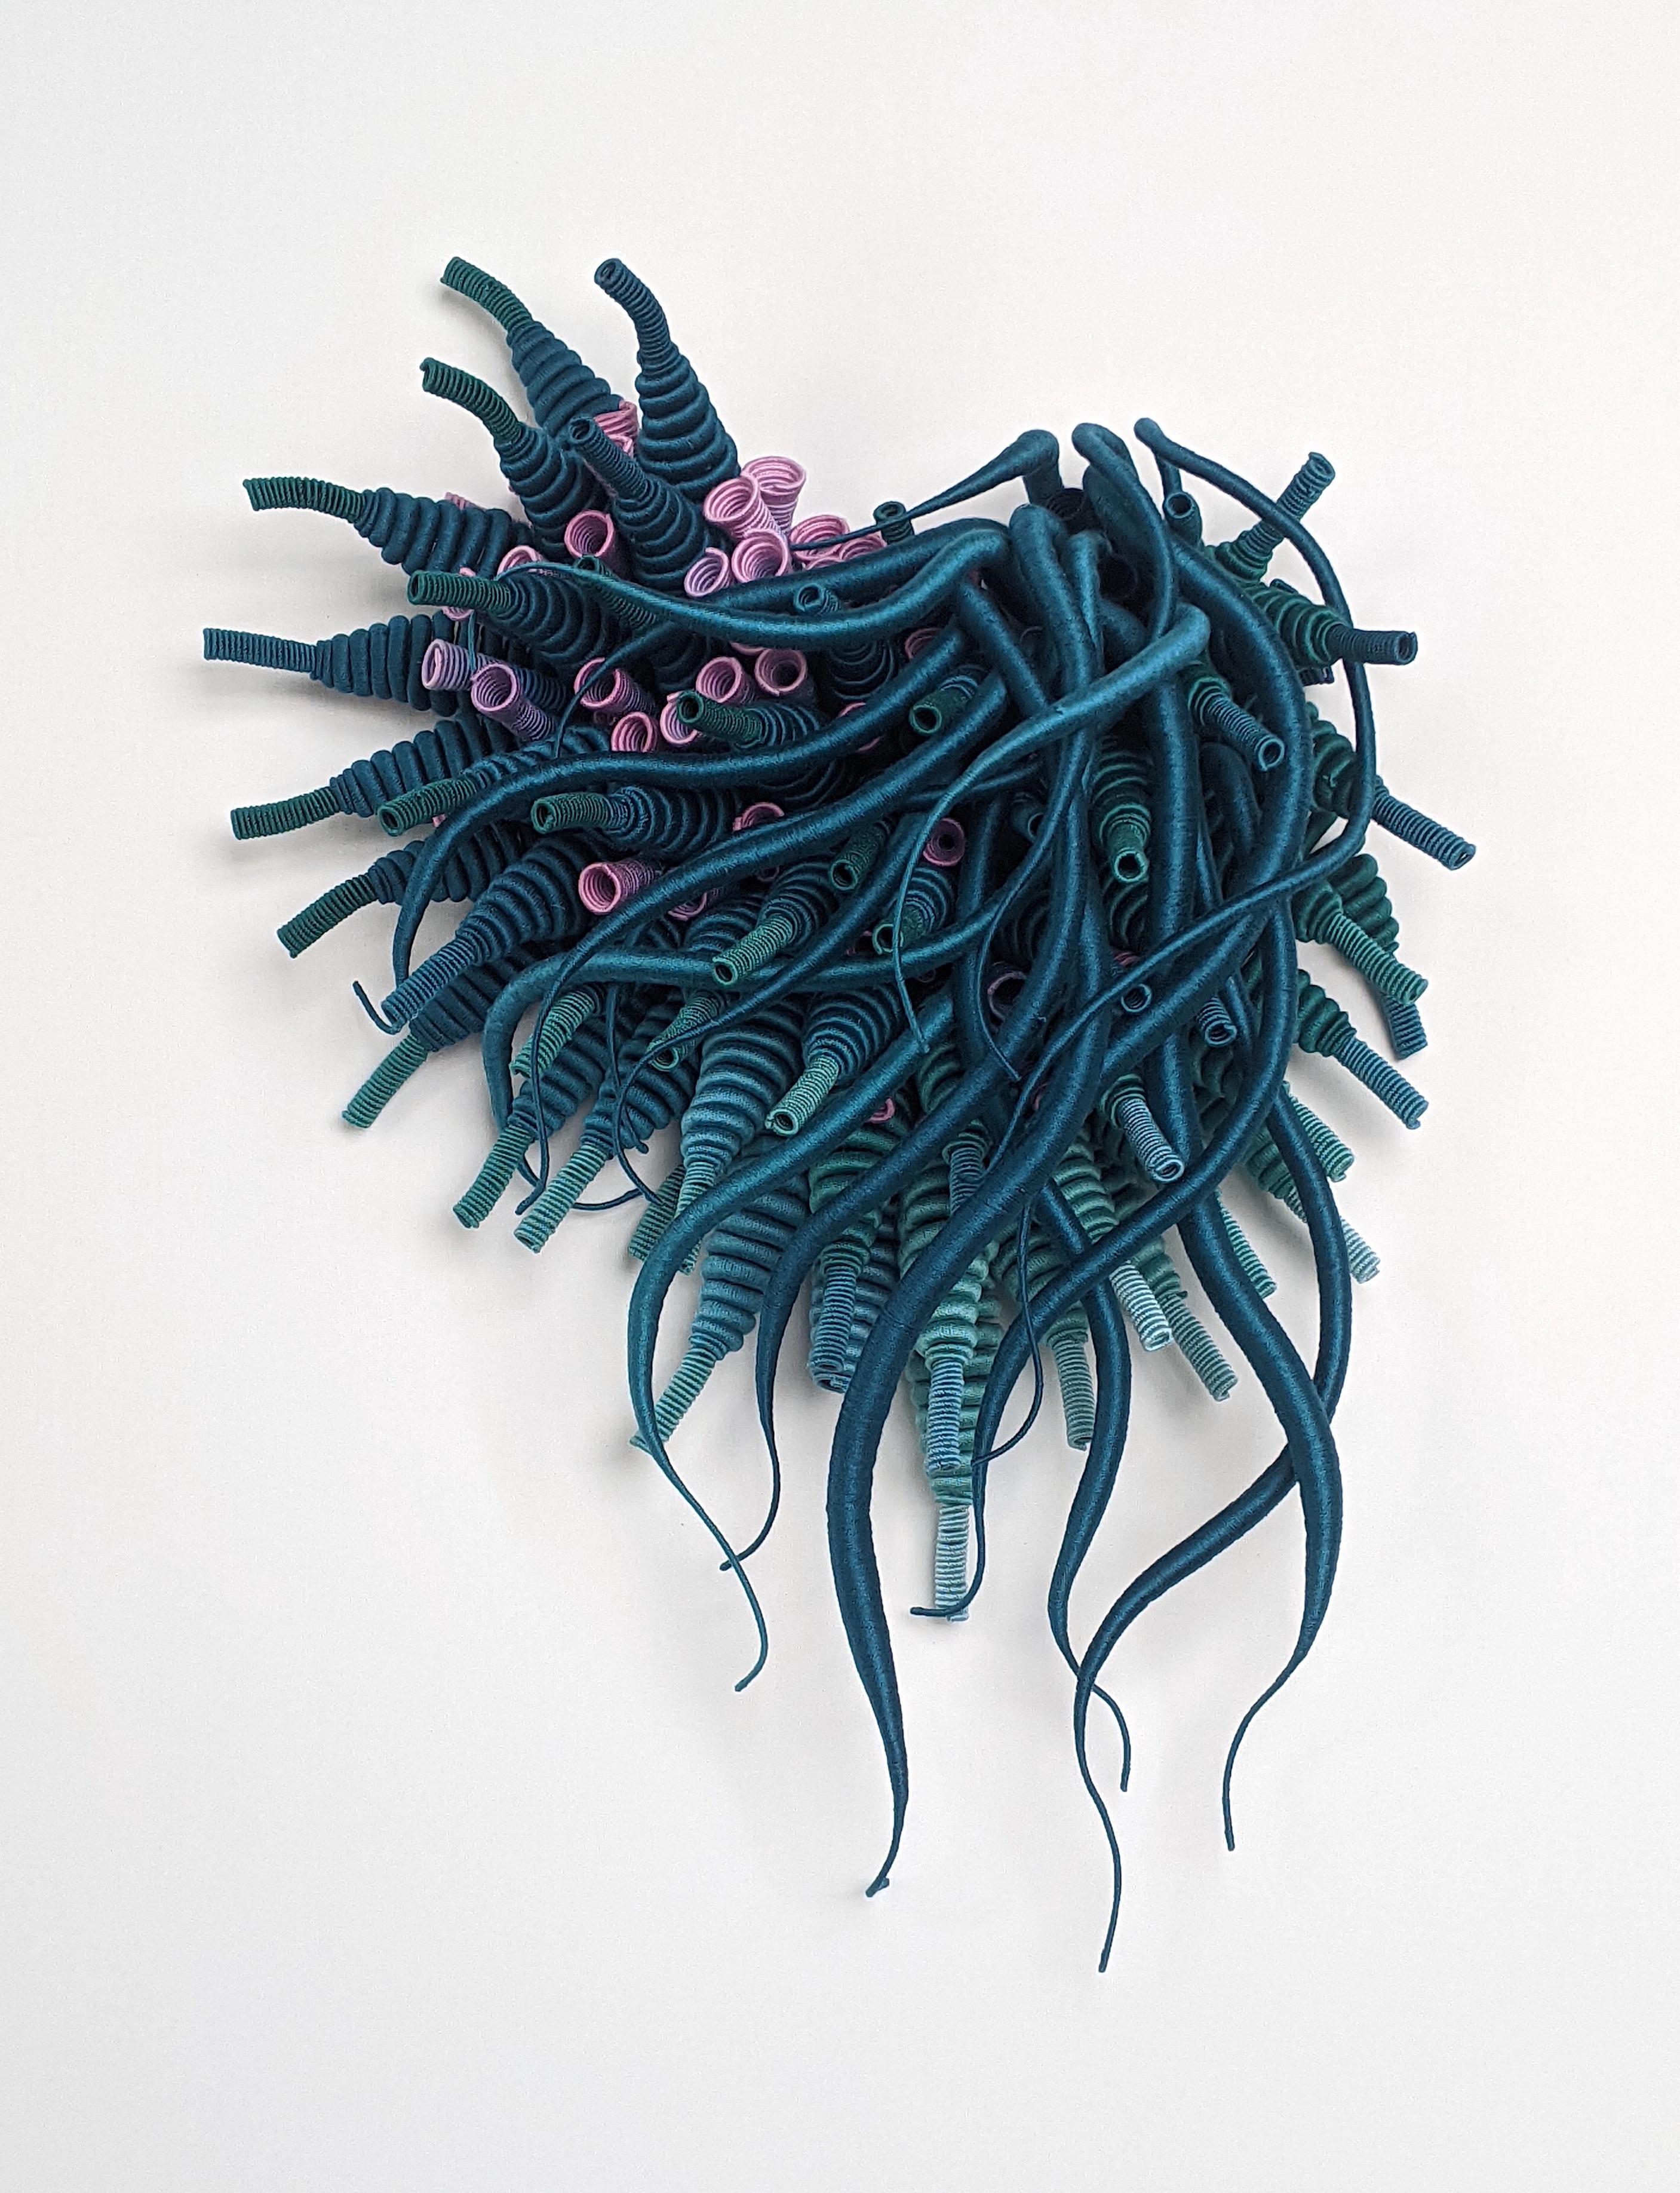 Specimen 25, gerahmte, von der Sea Nature inspirierte, handgefärbte blaugrüne Faserskulptur